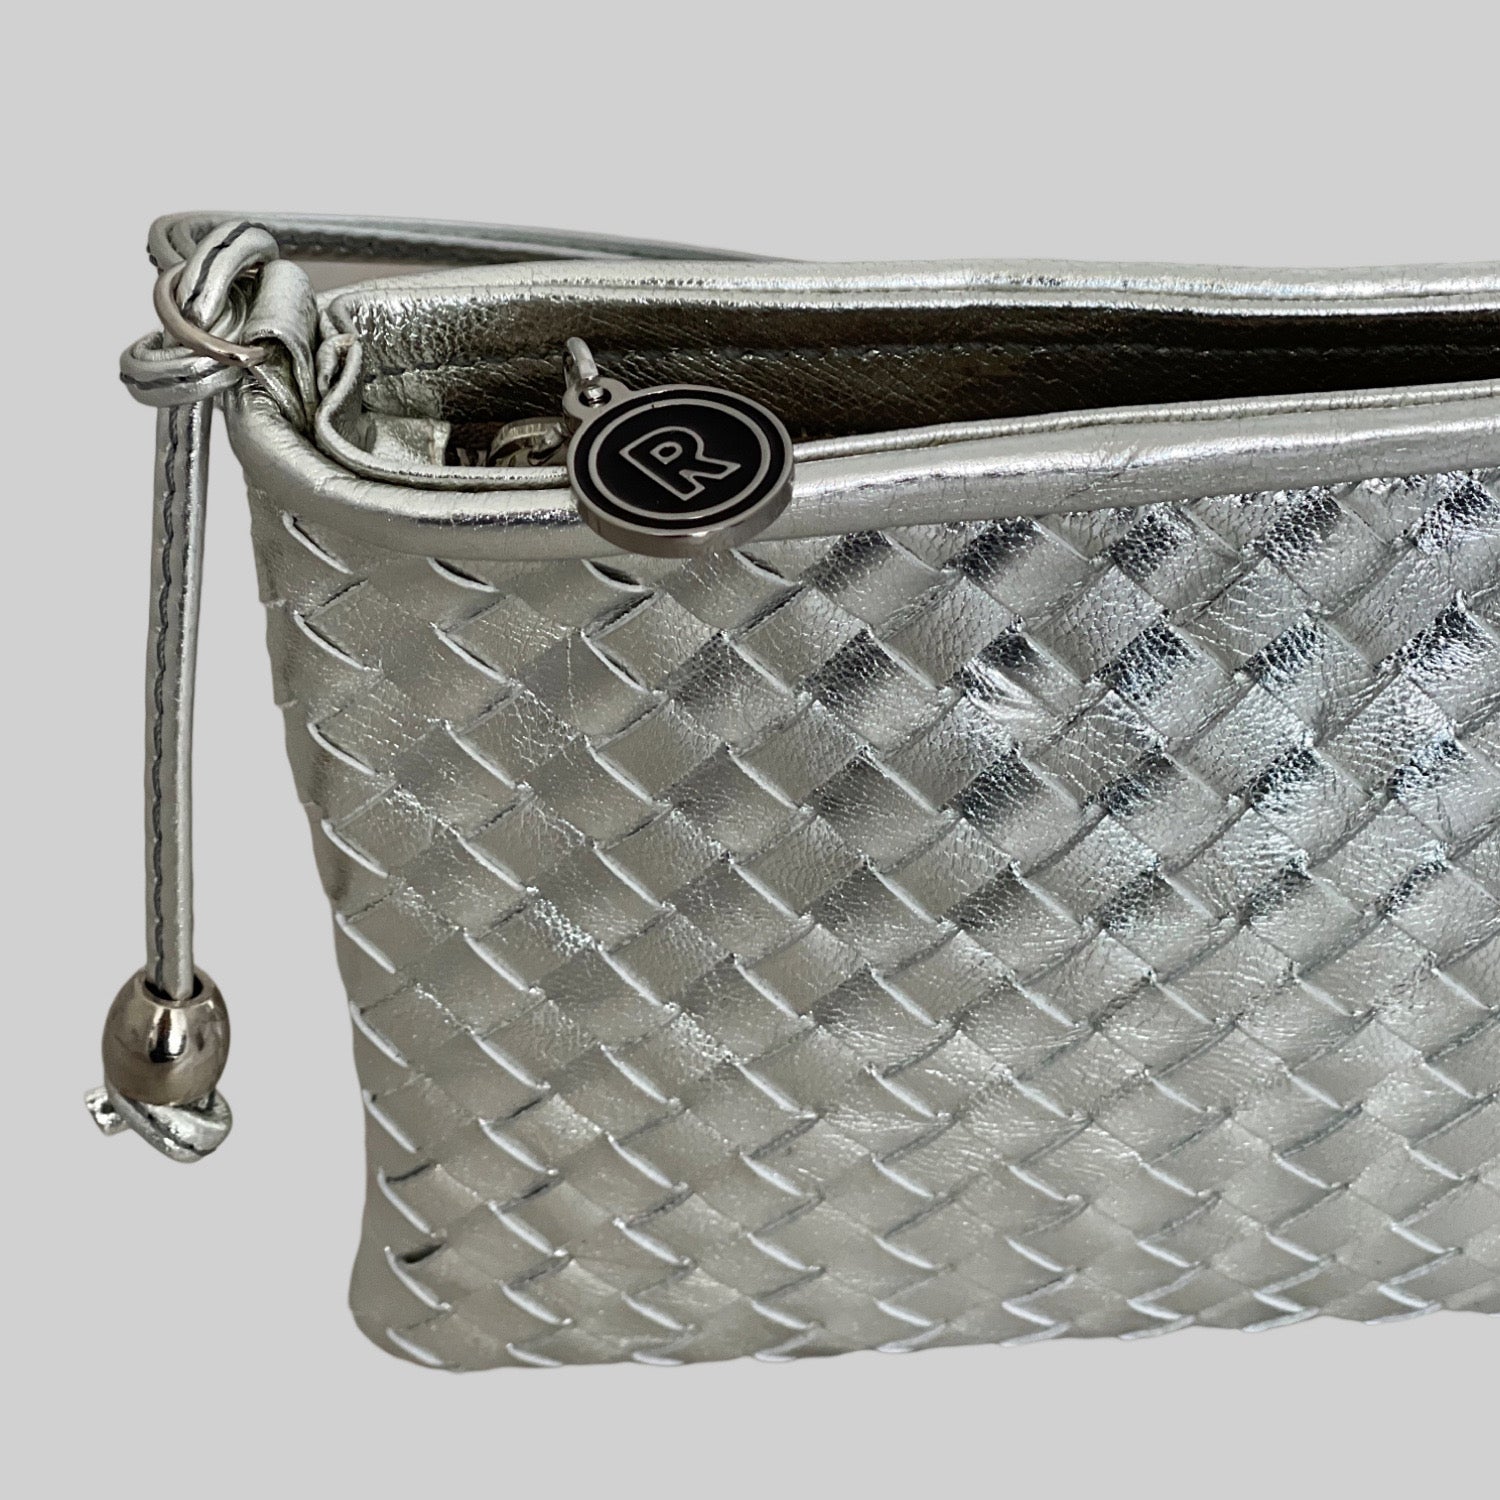  Ribichini Camper Clean Clutch i sølv: Flettet lammeskinn, sofistikert glans, ikonisk R-detaj i sølv. Elegant og stilfull.